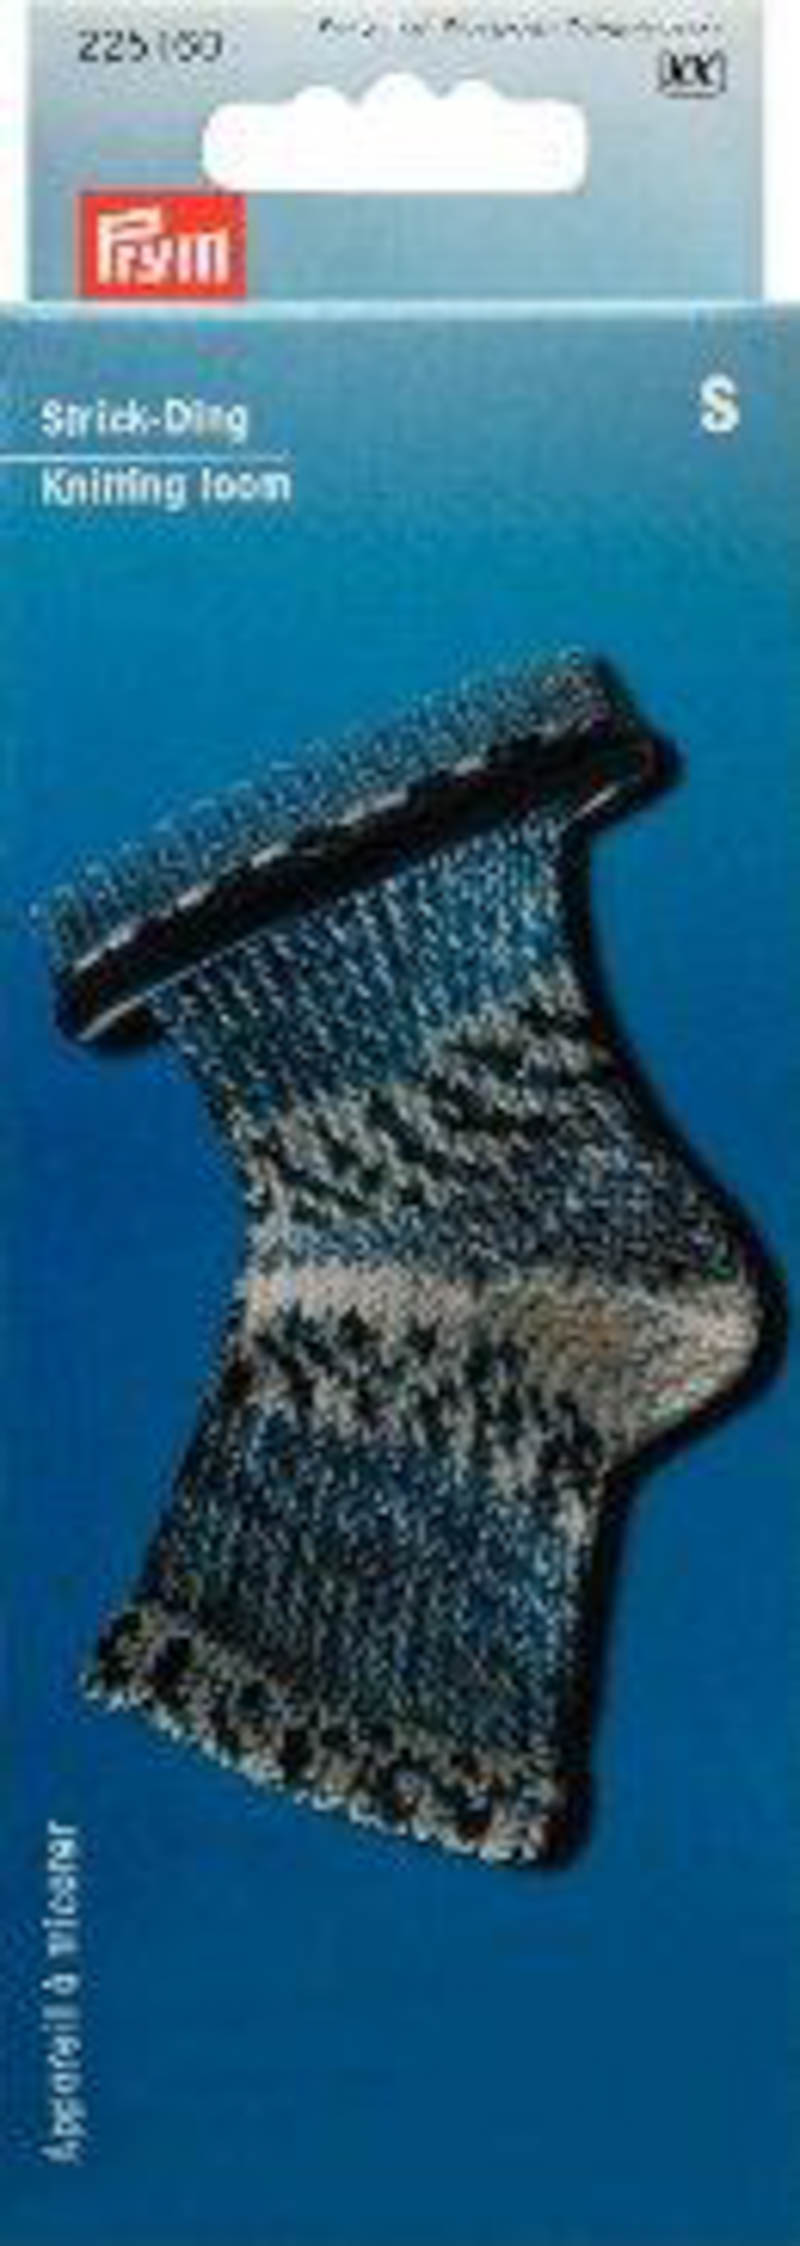 Приспособление для вязания носков и митенок, размер S, 28 штифтов пластик/металл фиолетовый/серебр.